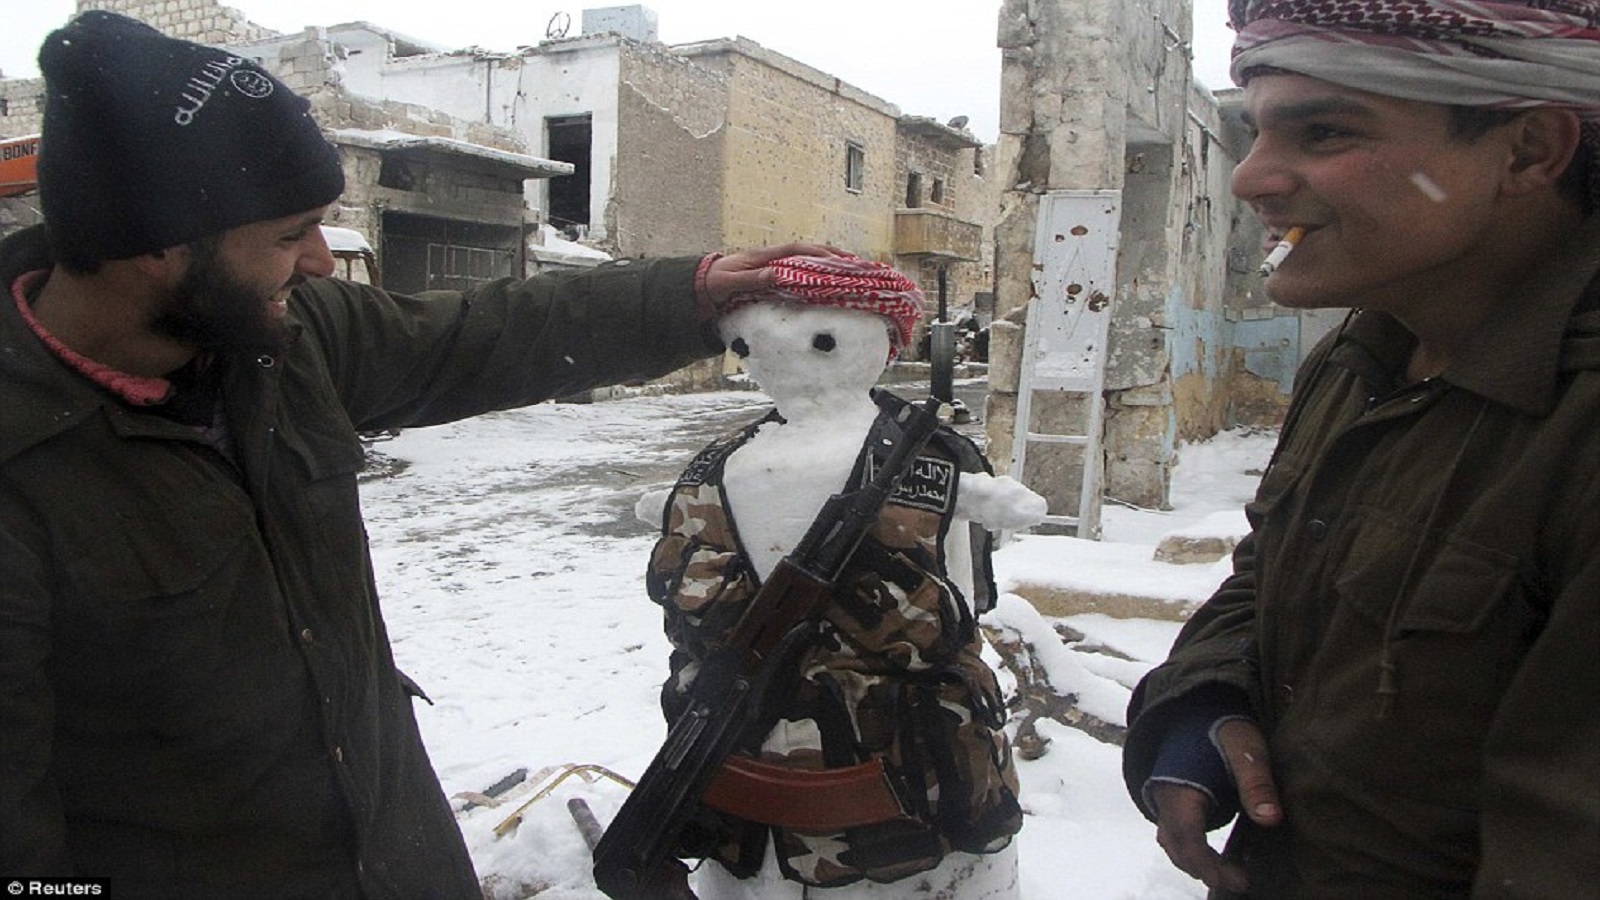 قوات المعارضة في 2013 صنعت رجل ثلج من ثلوج حلب